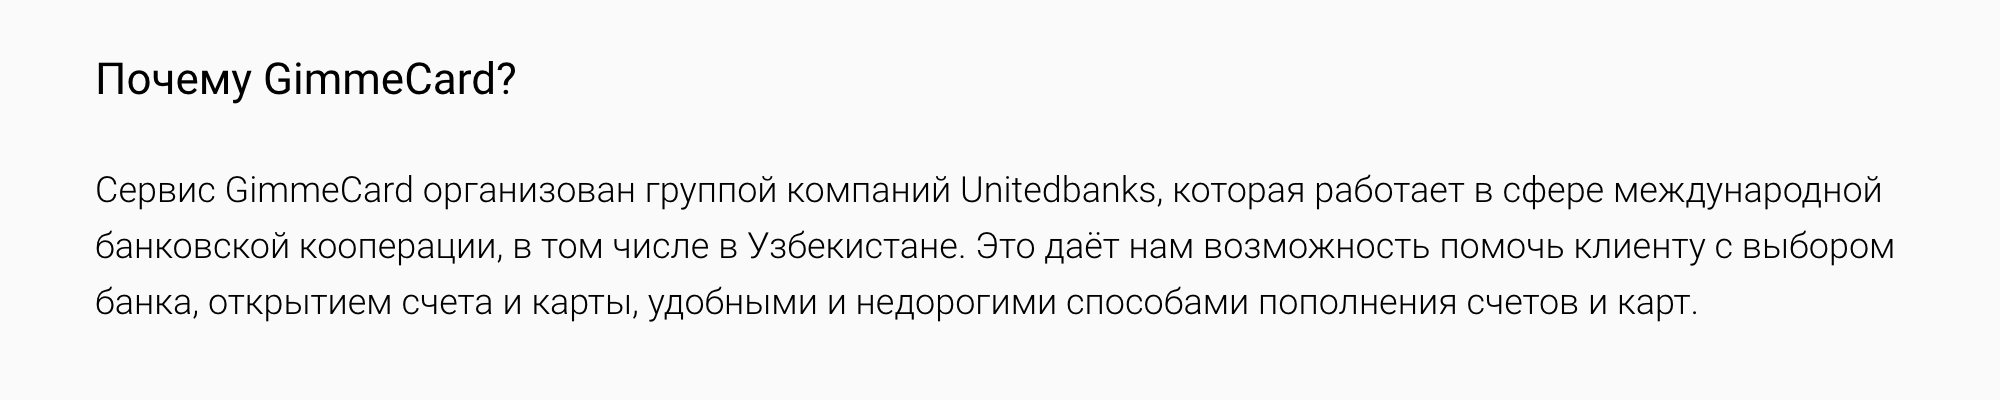 GimmeCard пишет о себе как о сервисе некой группы компаний UnitedBanks, но договор почему⁠-⁠то заключается не с юрлицом этого проекта, а с индивидуальным предпринимателем